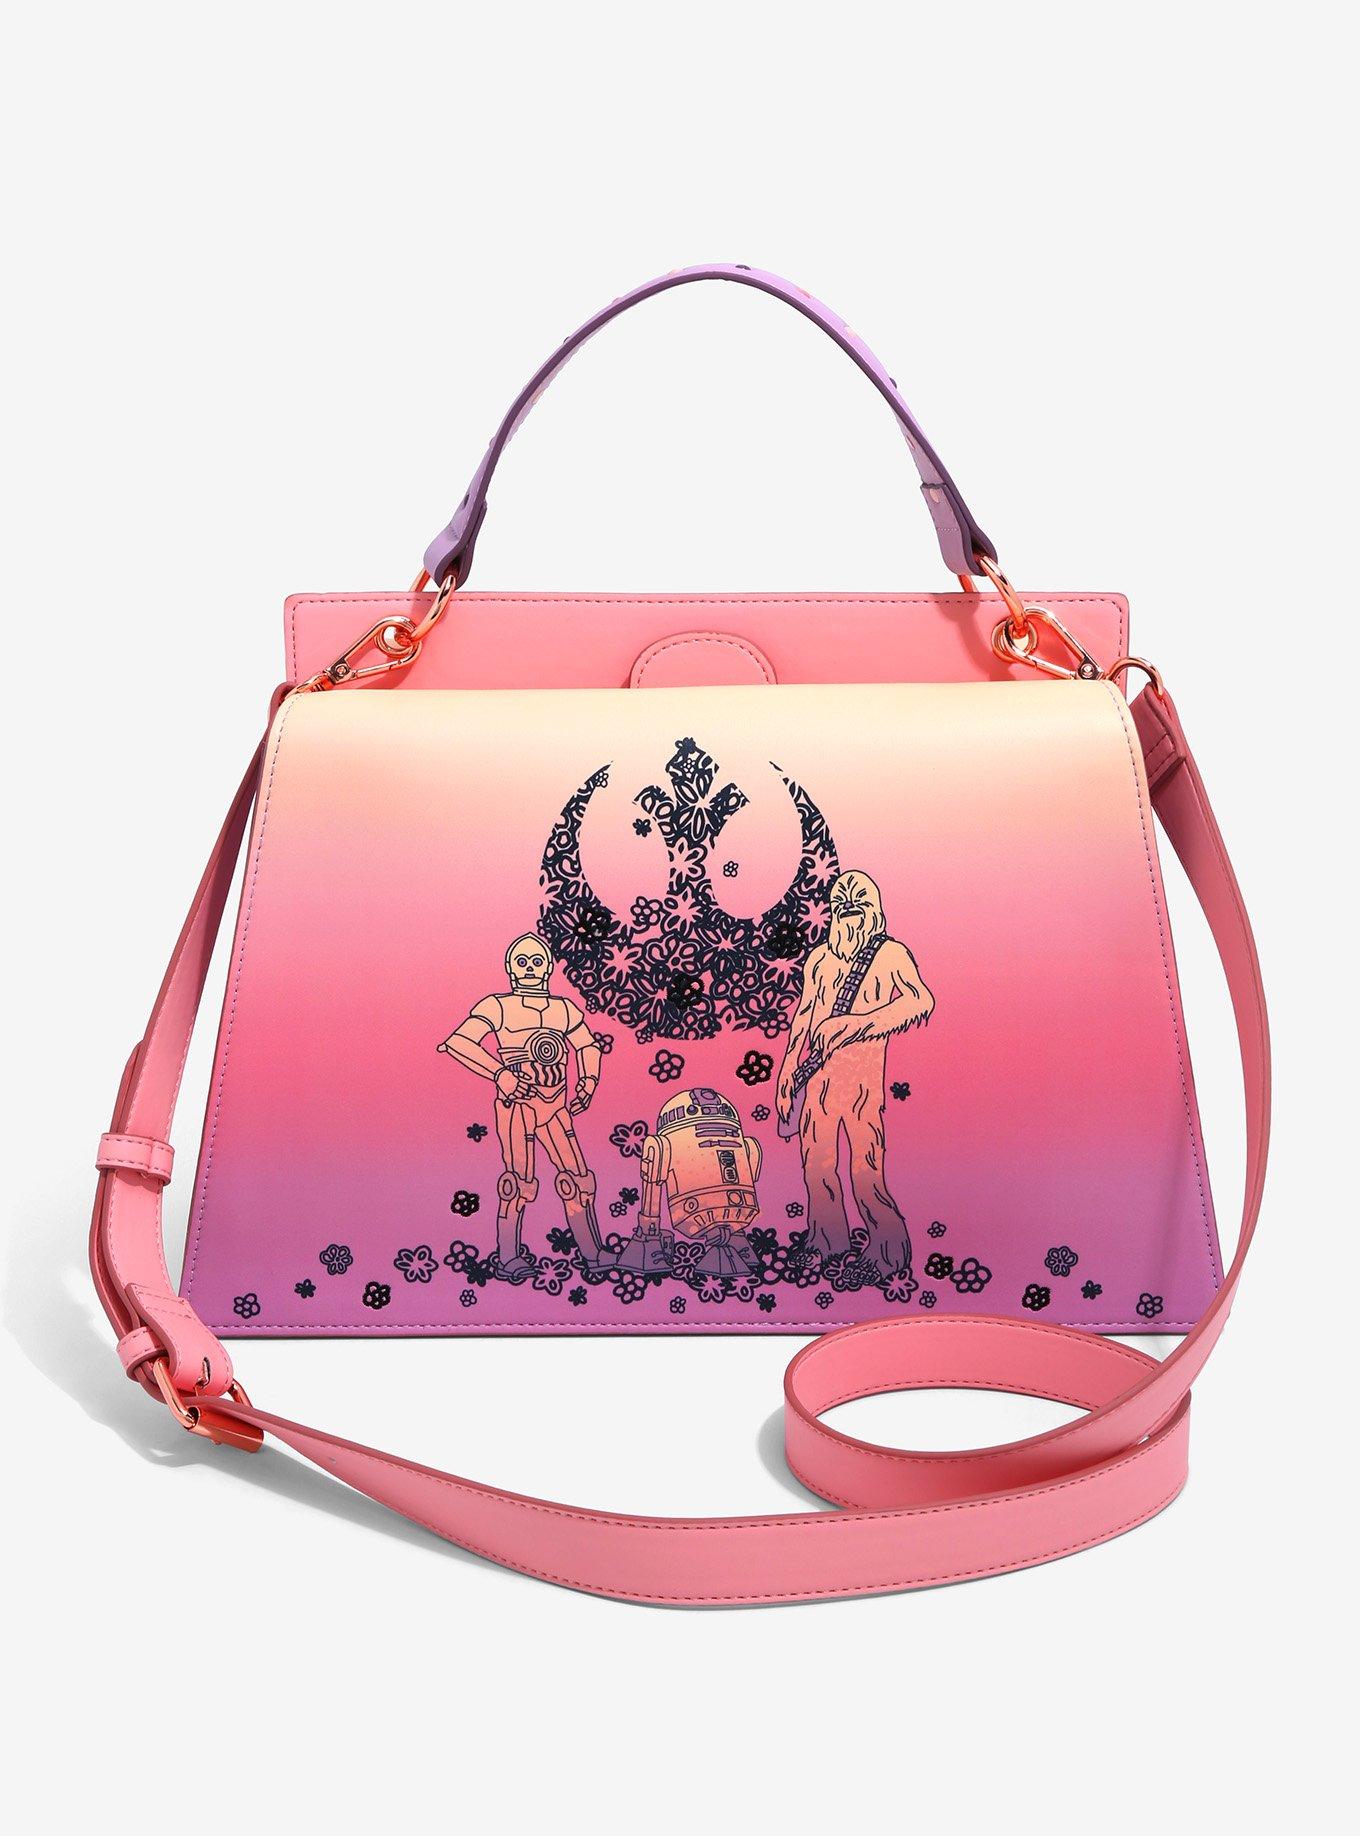 Medium Handbag Superheroine Limited Edition Stud